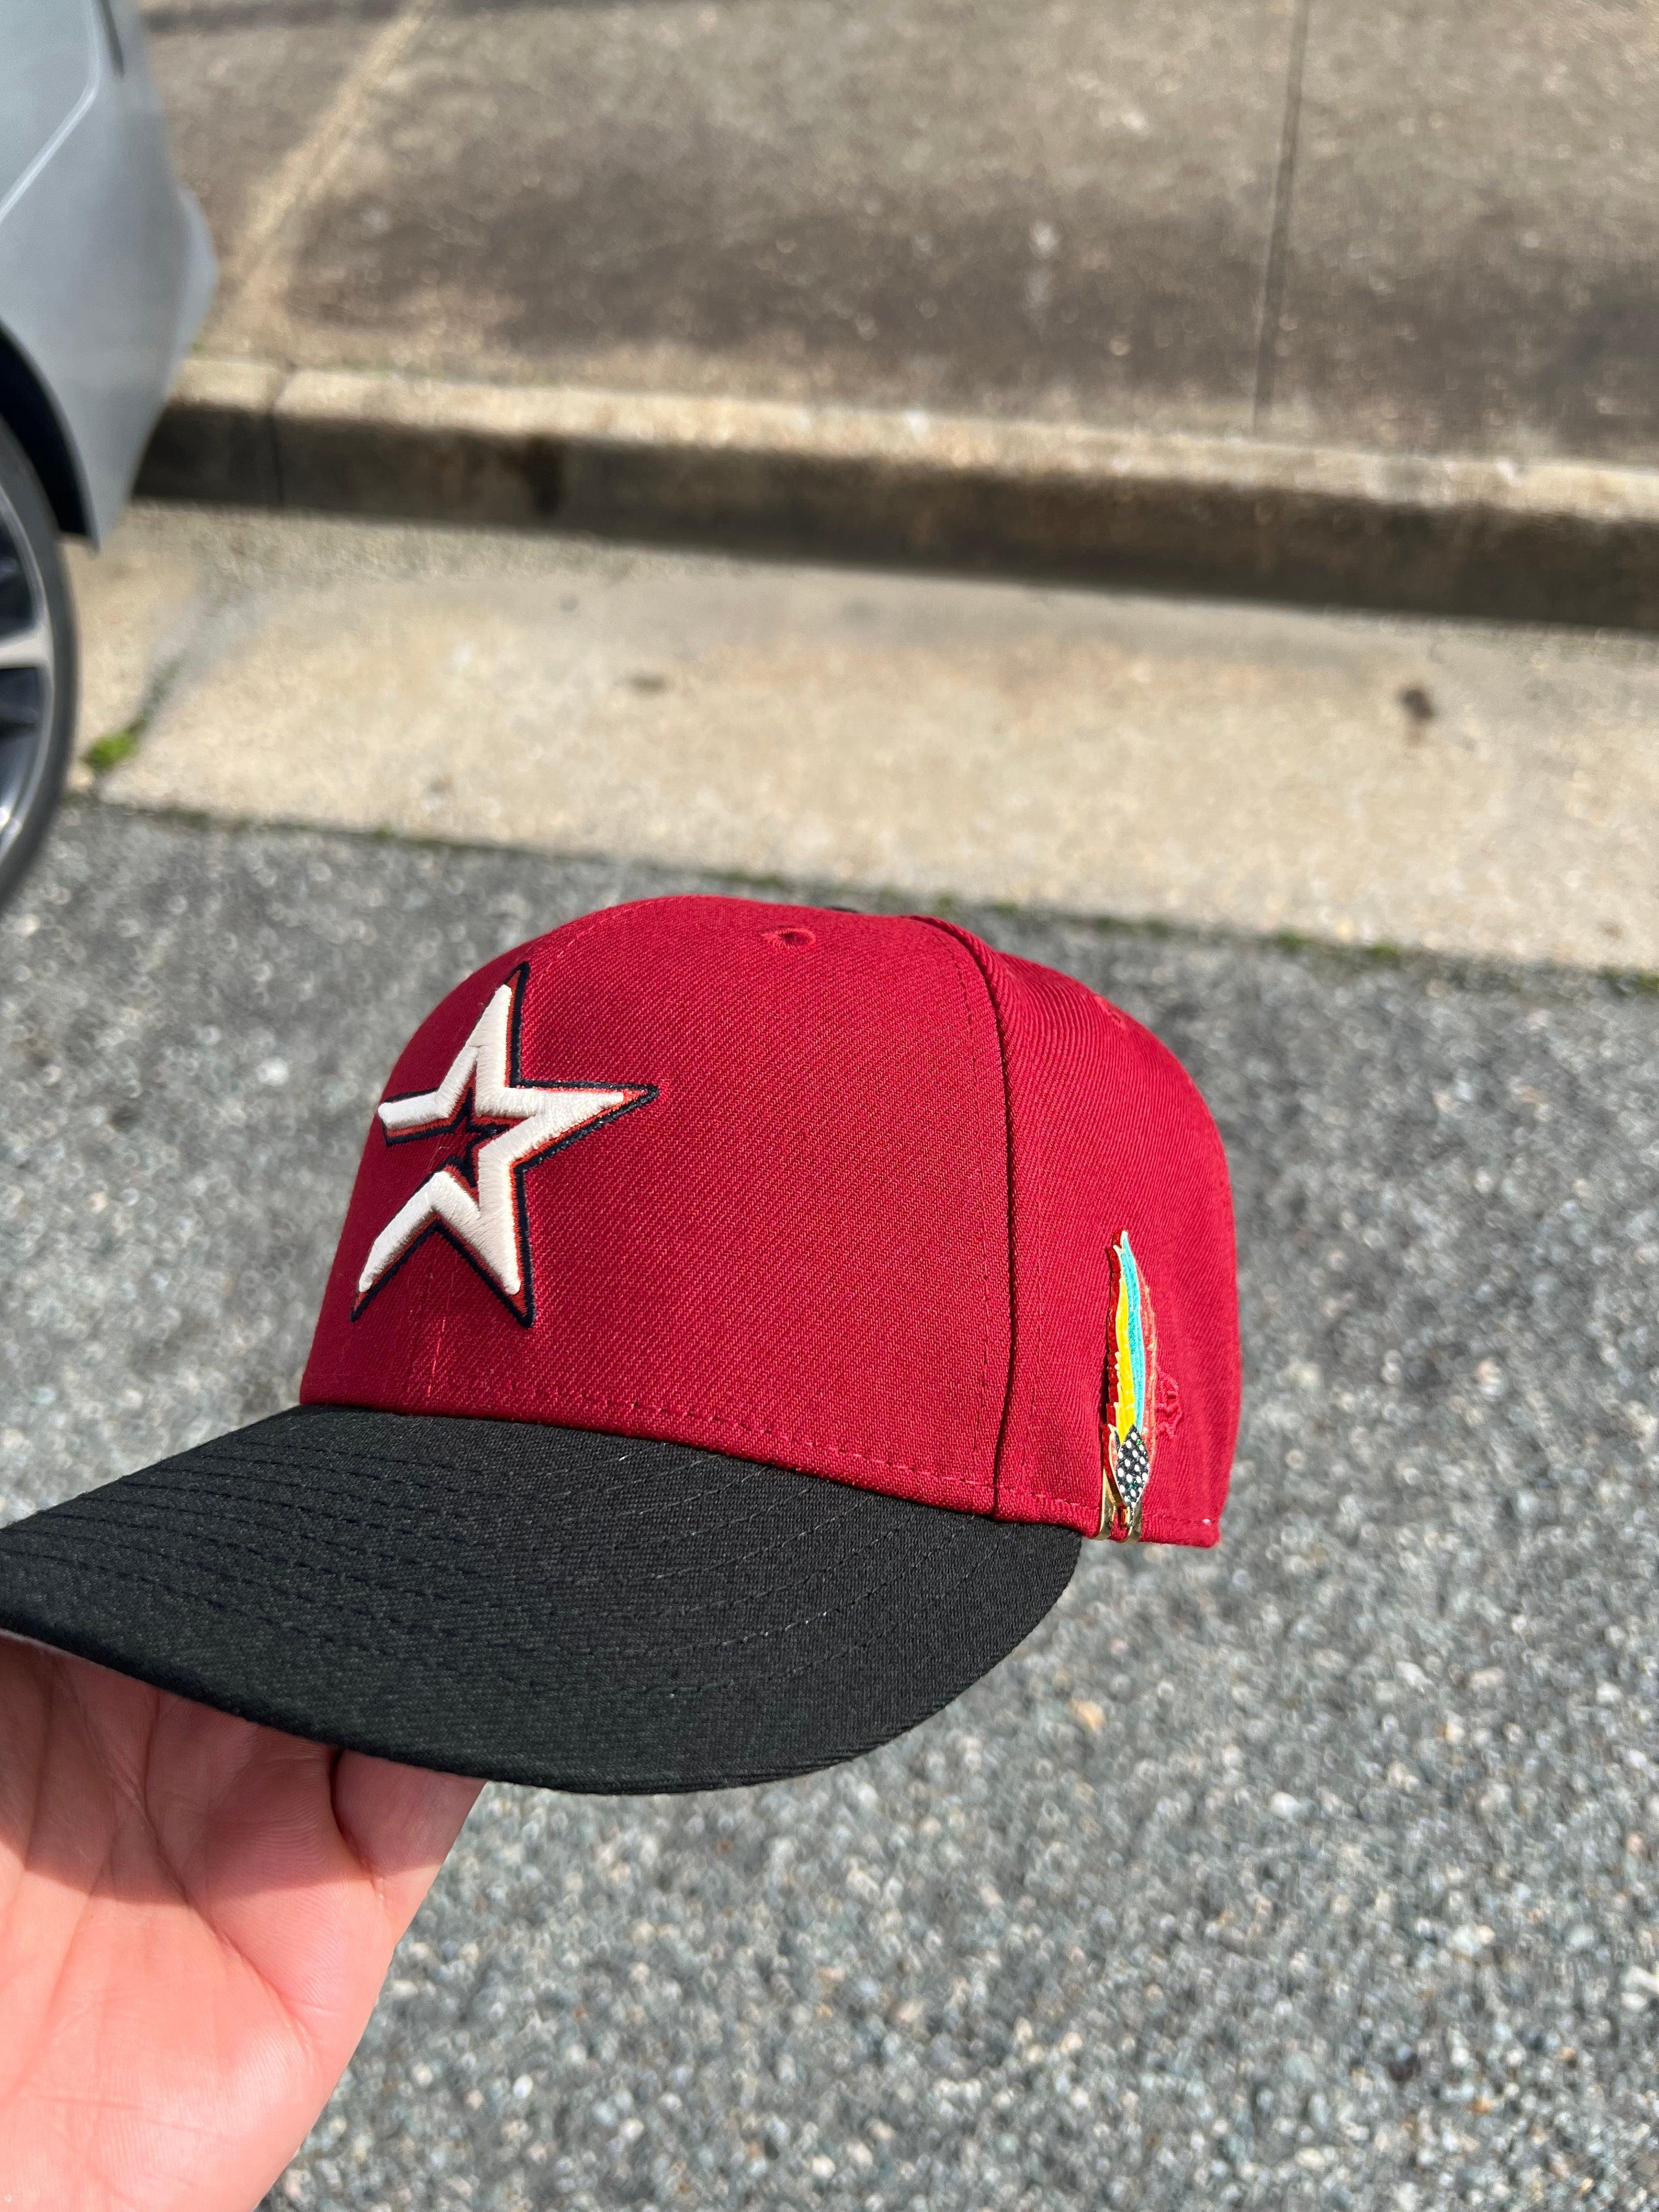 Houston Astros Brick/Camo Brim New Era Fitted Hat – BeisbolMXShop